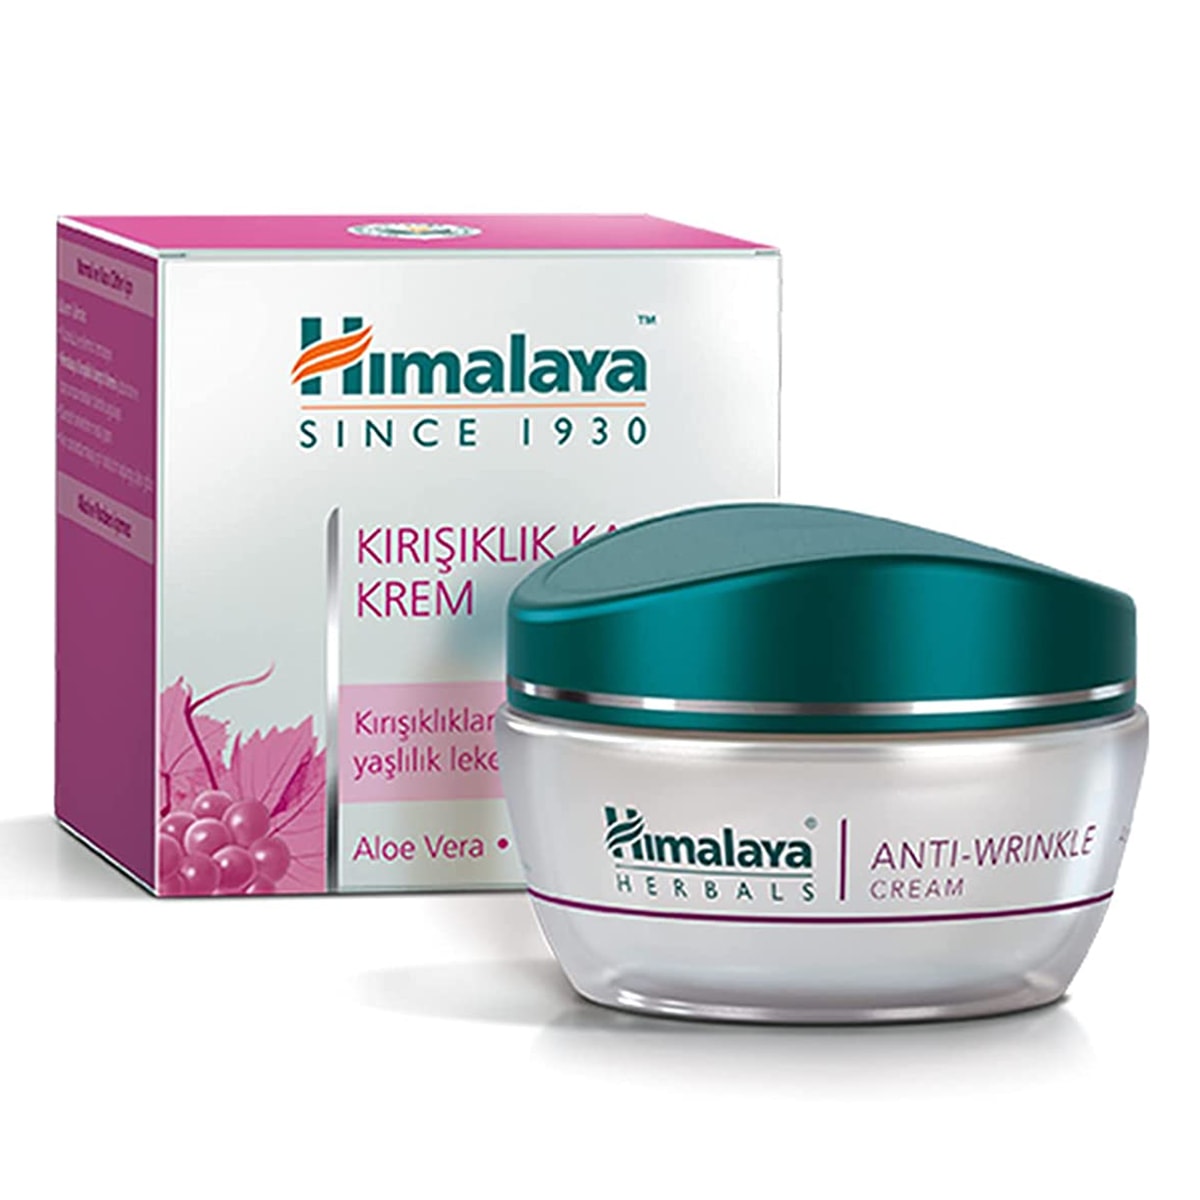 Buy Himalaya Herbals Anti Wrinkle Cream - 50 ml